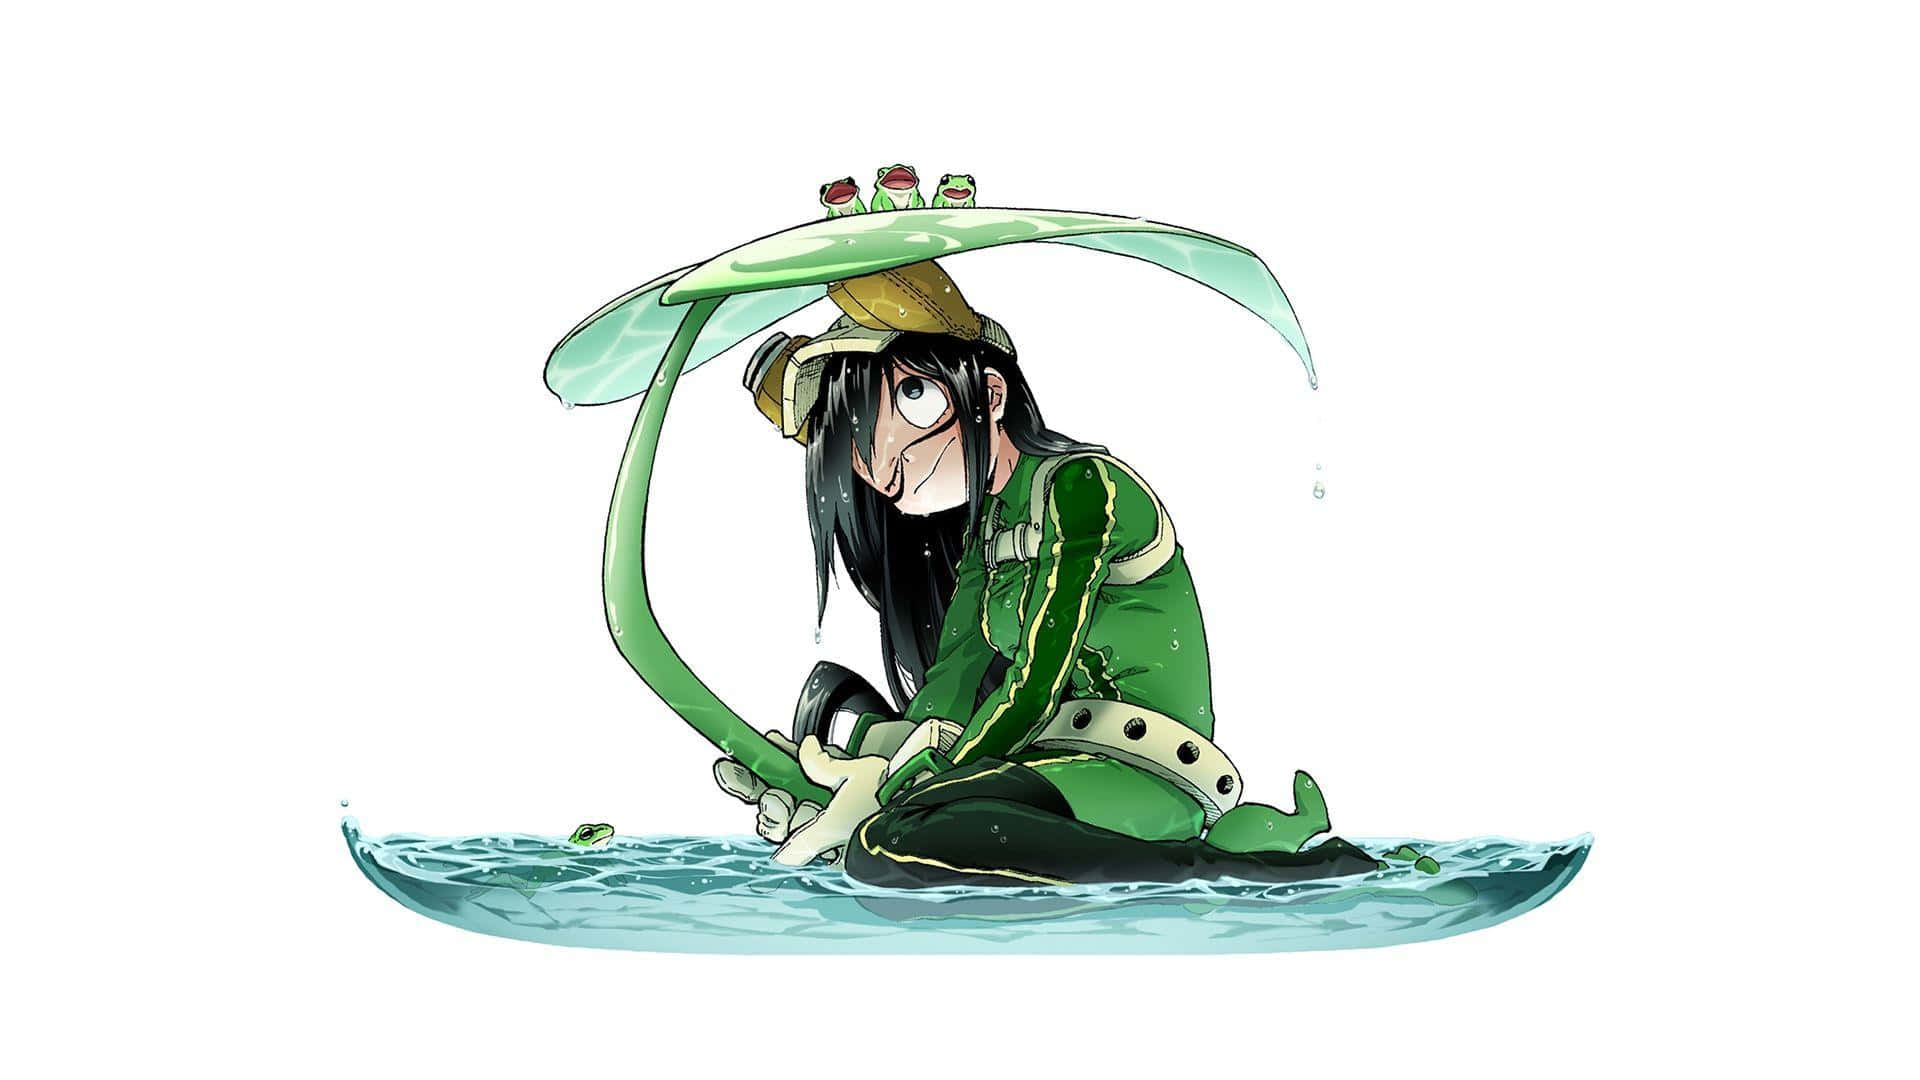 En pige med langt hår sidder i vandet. Wallpaper